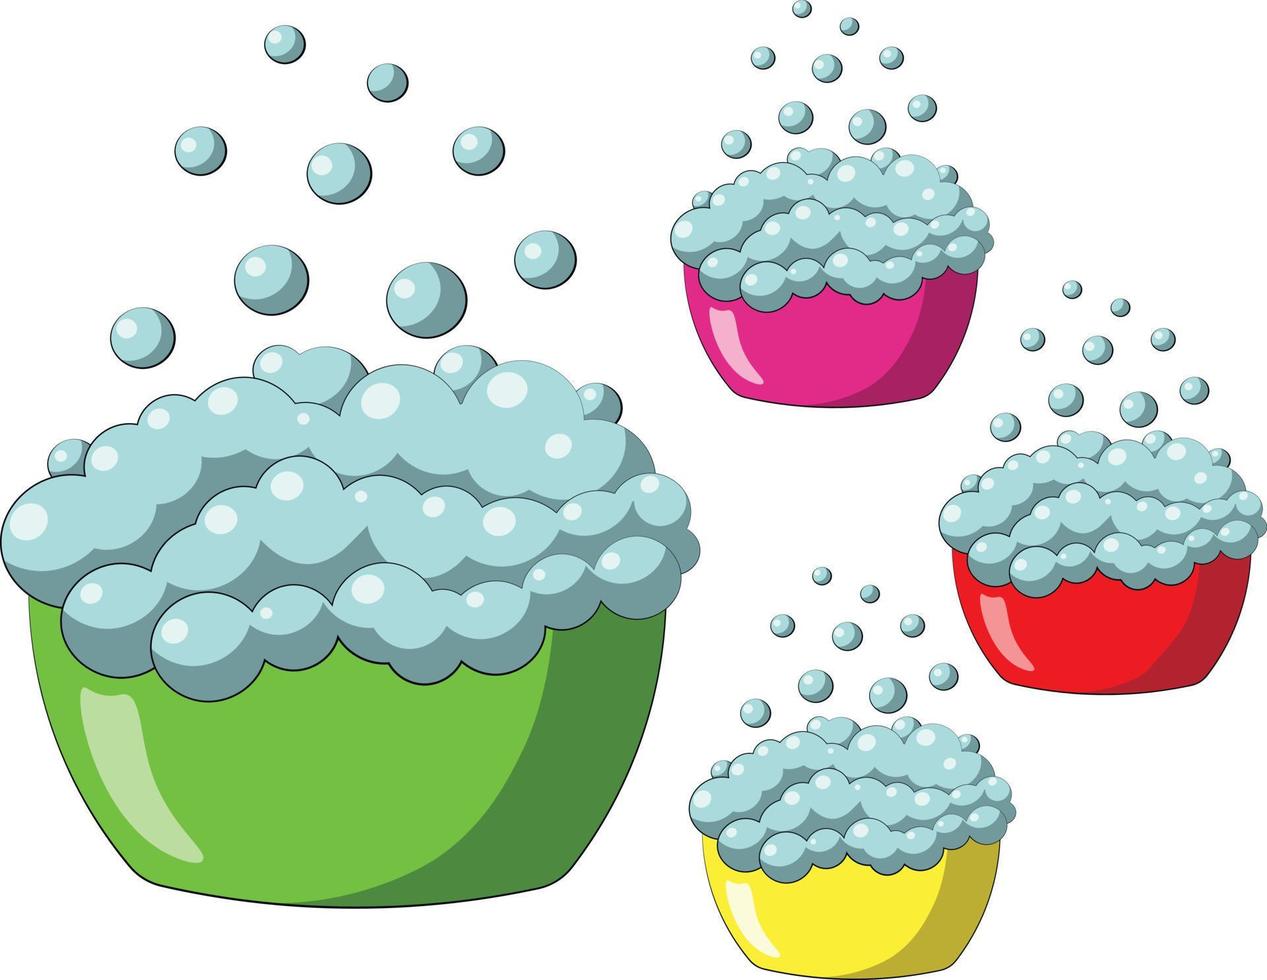 enkele element wastafel met bubbel. illustratie in kleur tekenen vector